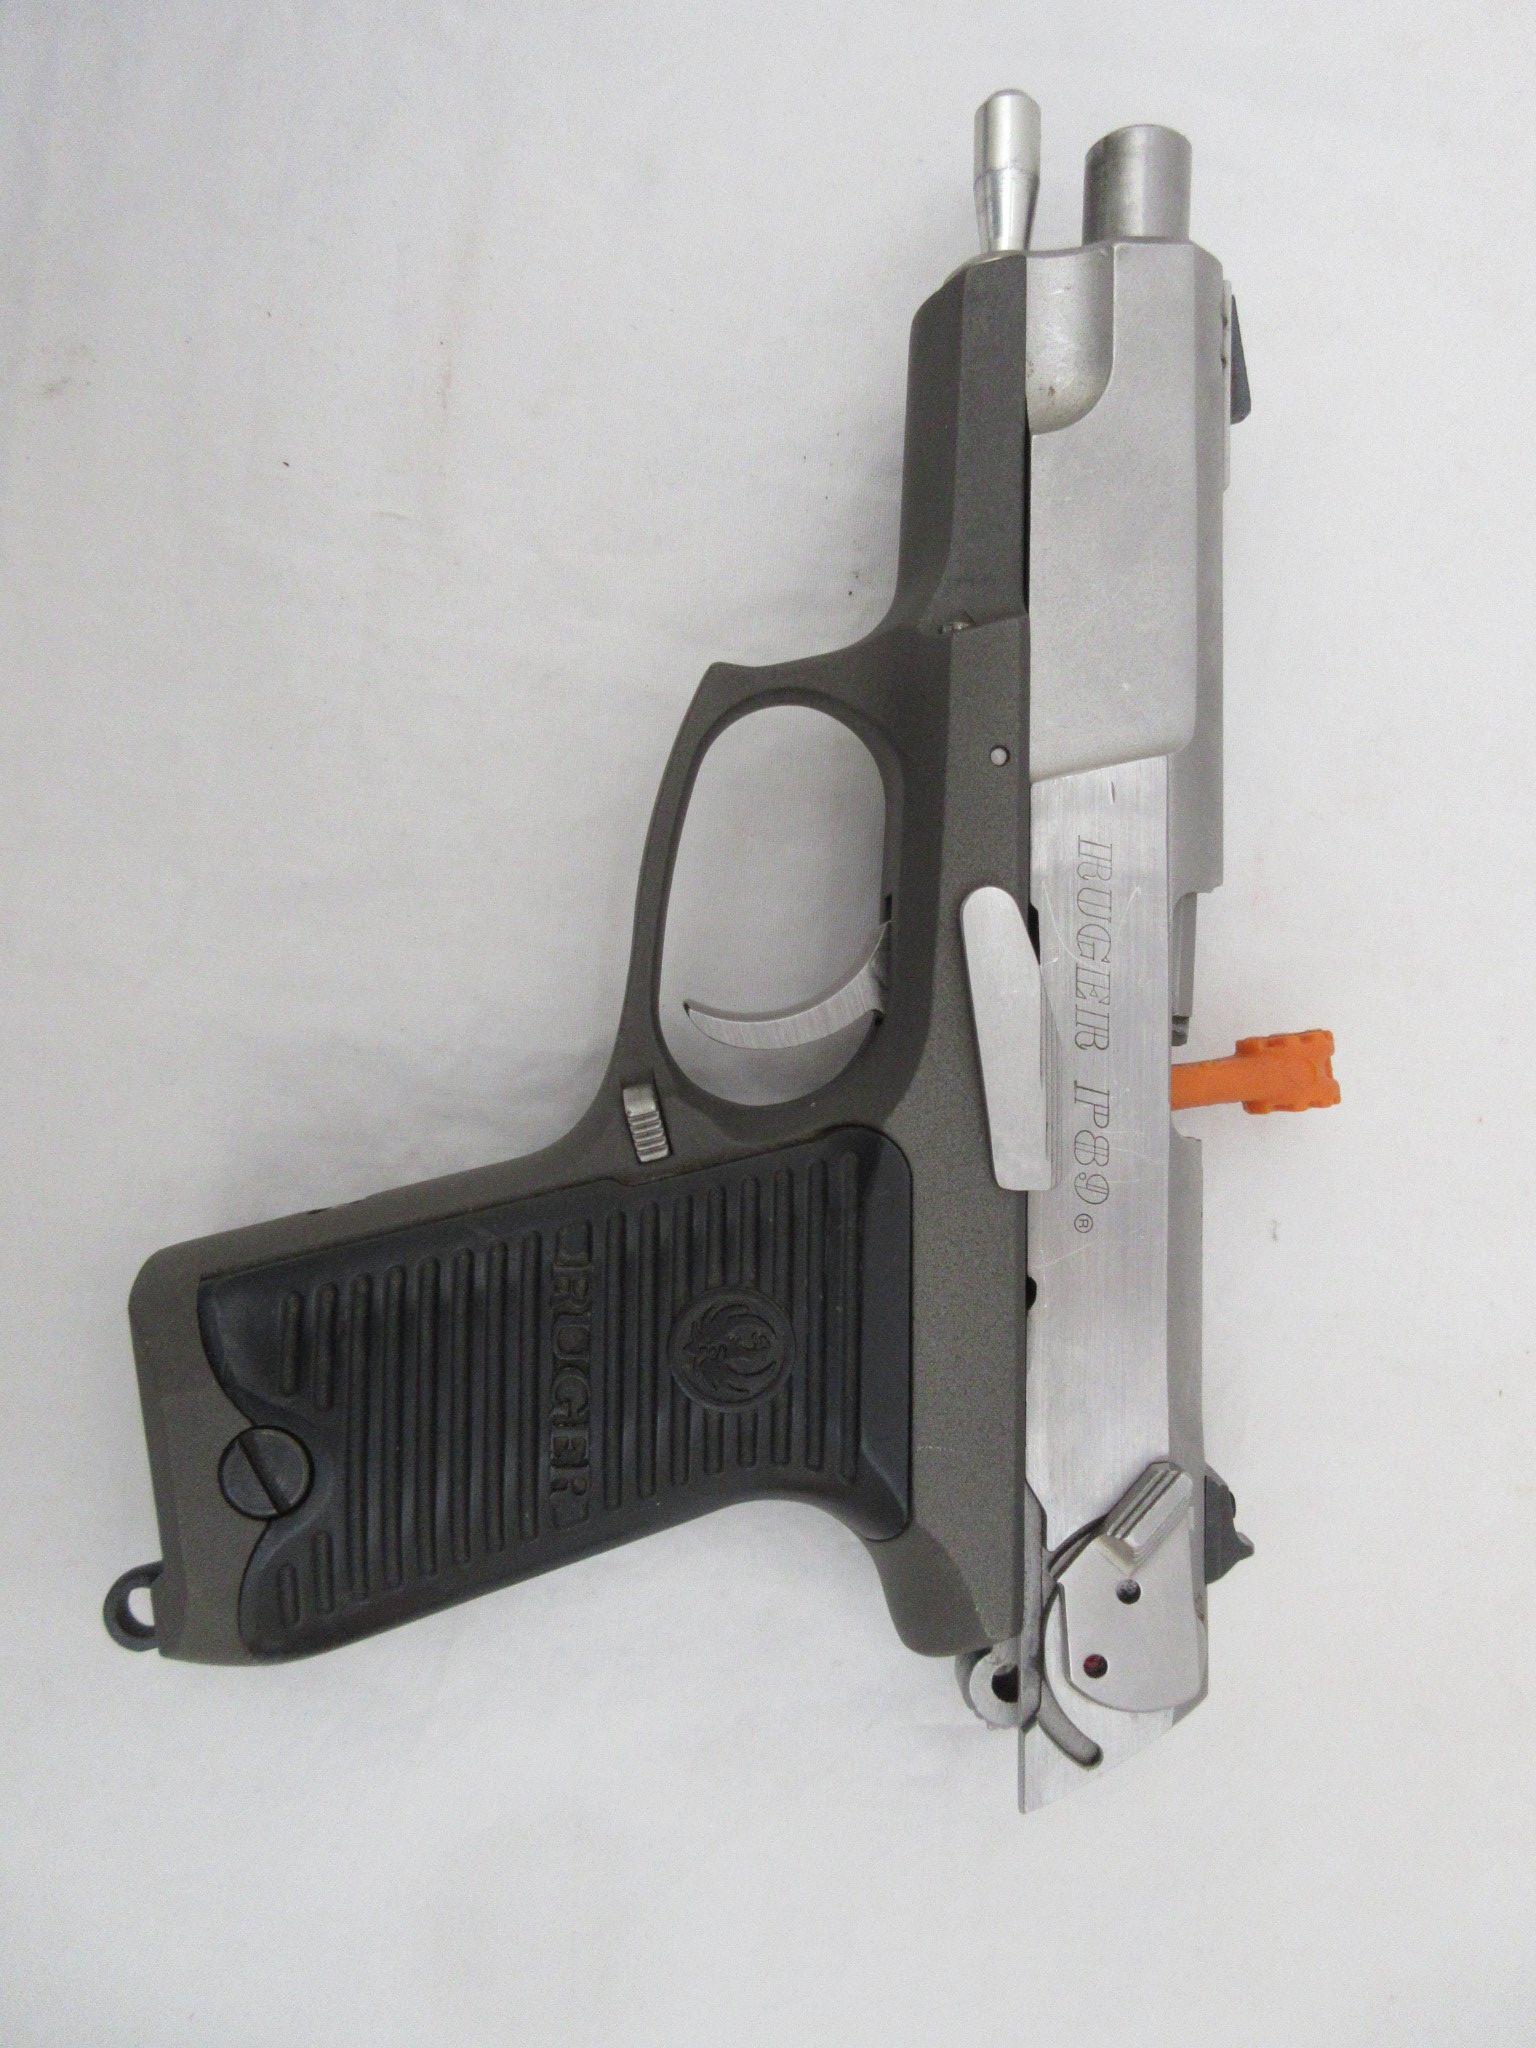 Ruger P89  9mm Pistol